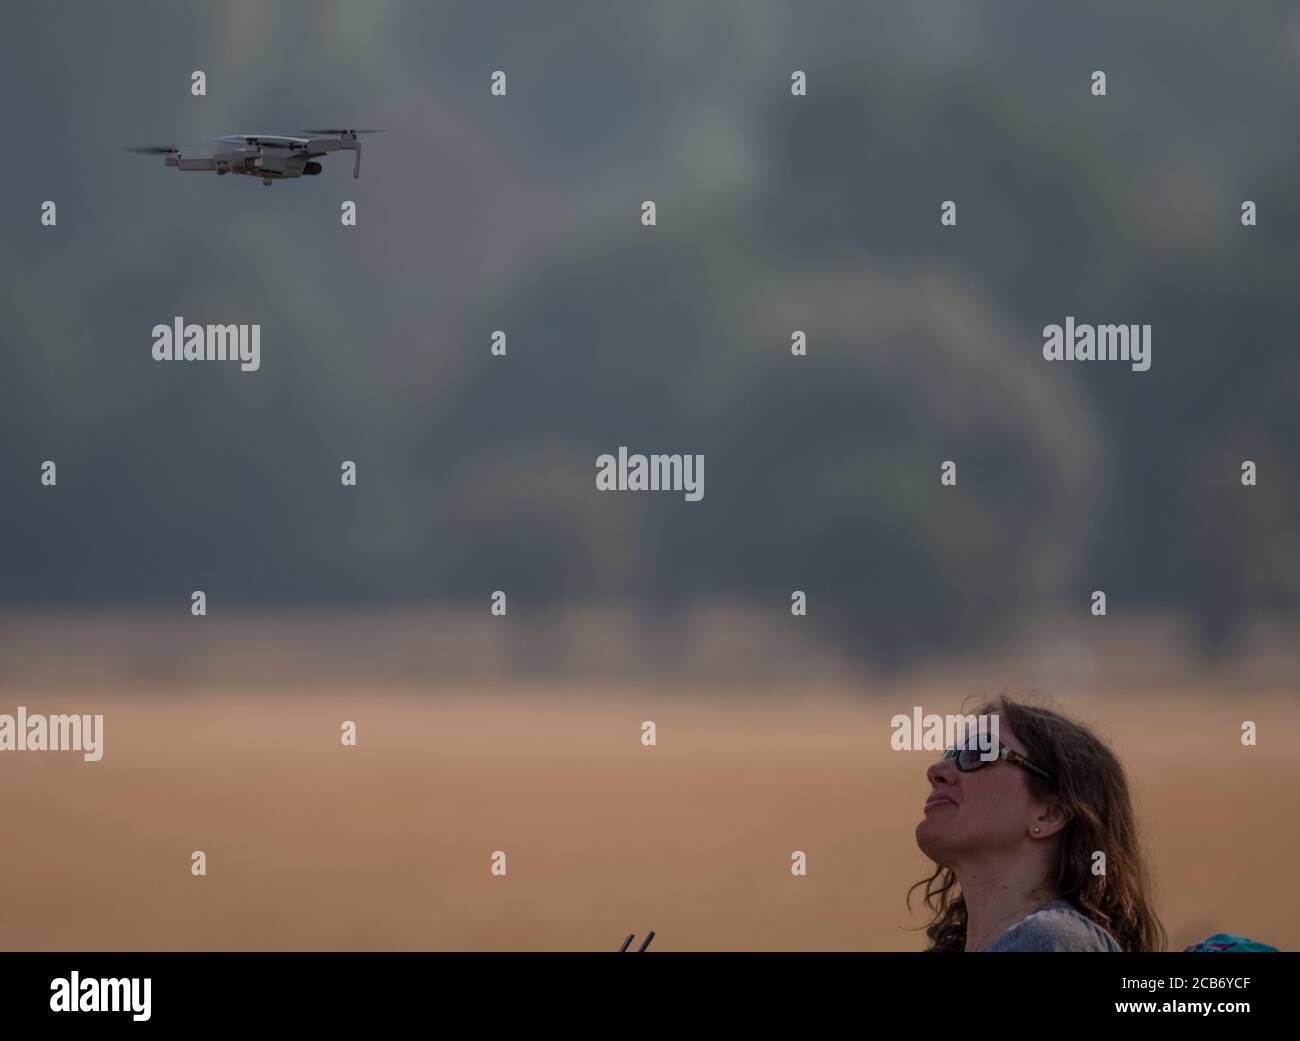 Richmond Park, Londres, Royaume-Uni. 11 août 2020. La vague de chaleur se poursuit à Londres. Une femme vole un drone dans le champ de vol en parachute du parc Richmond. Crédit : Malcolm Park/Alay Live News. Banque D'Images